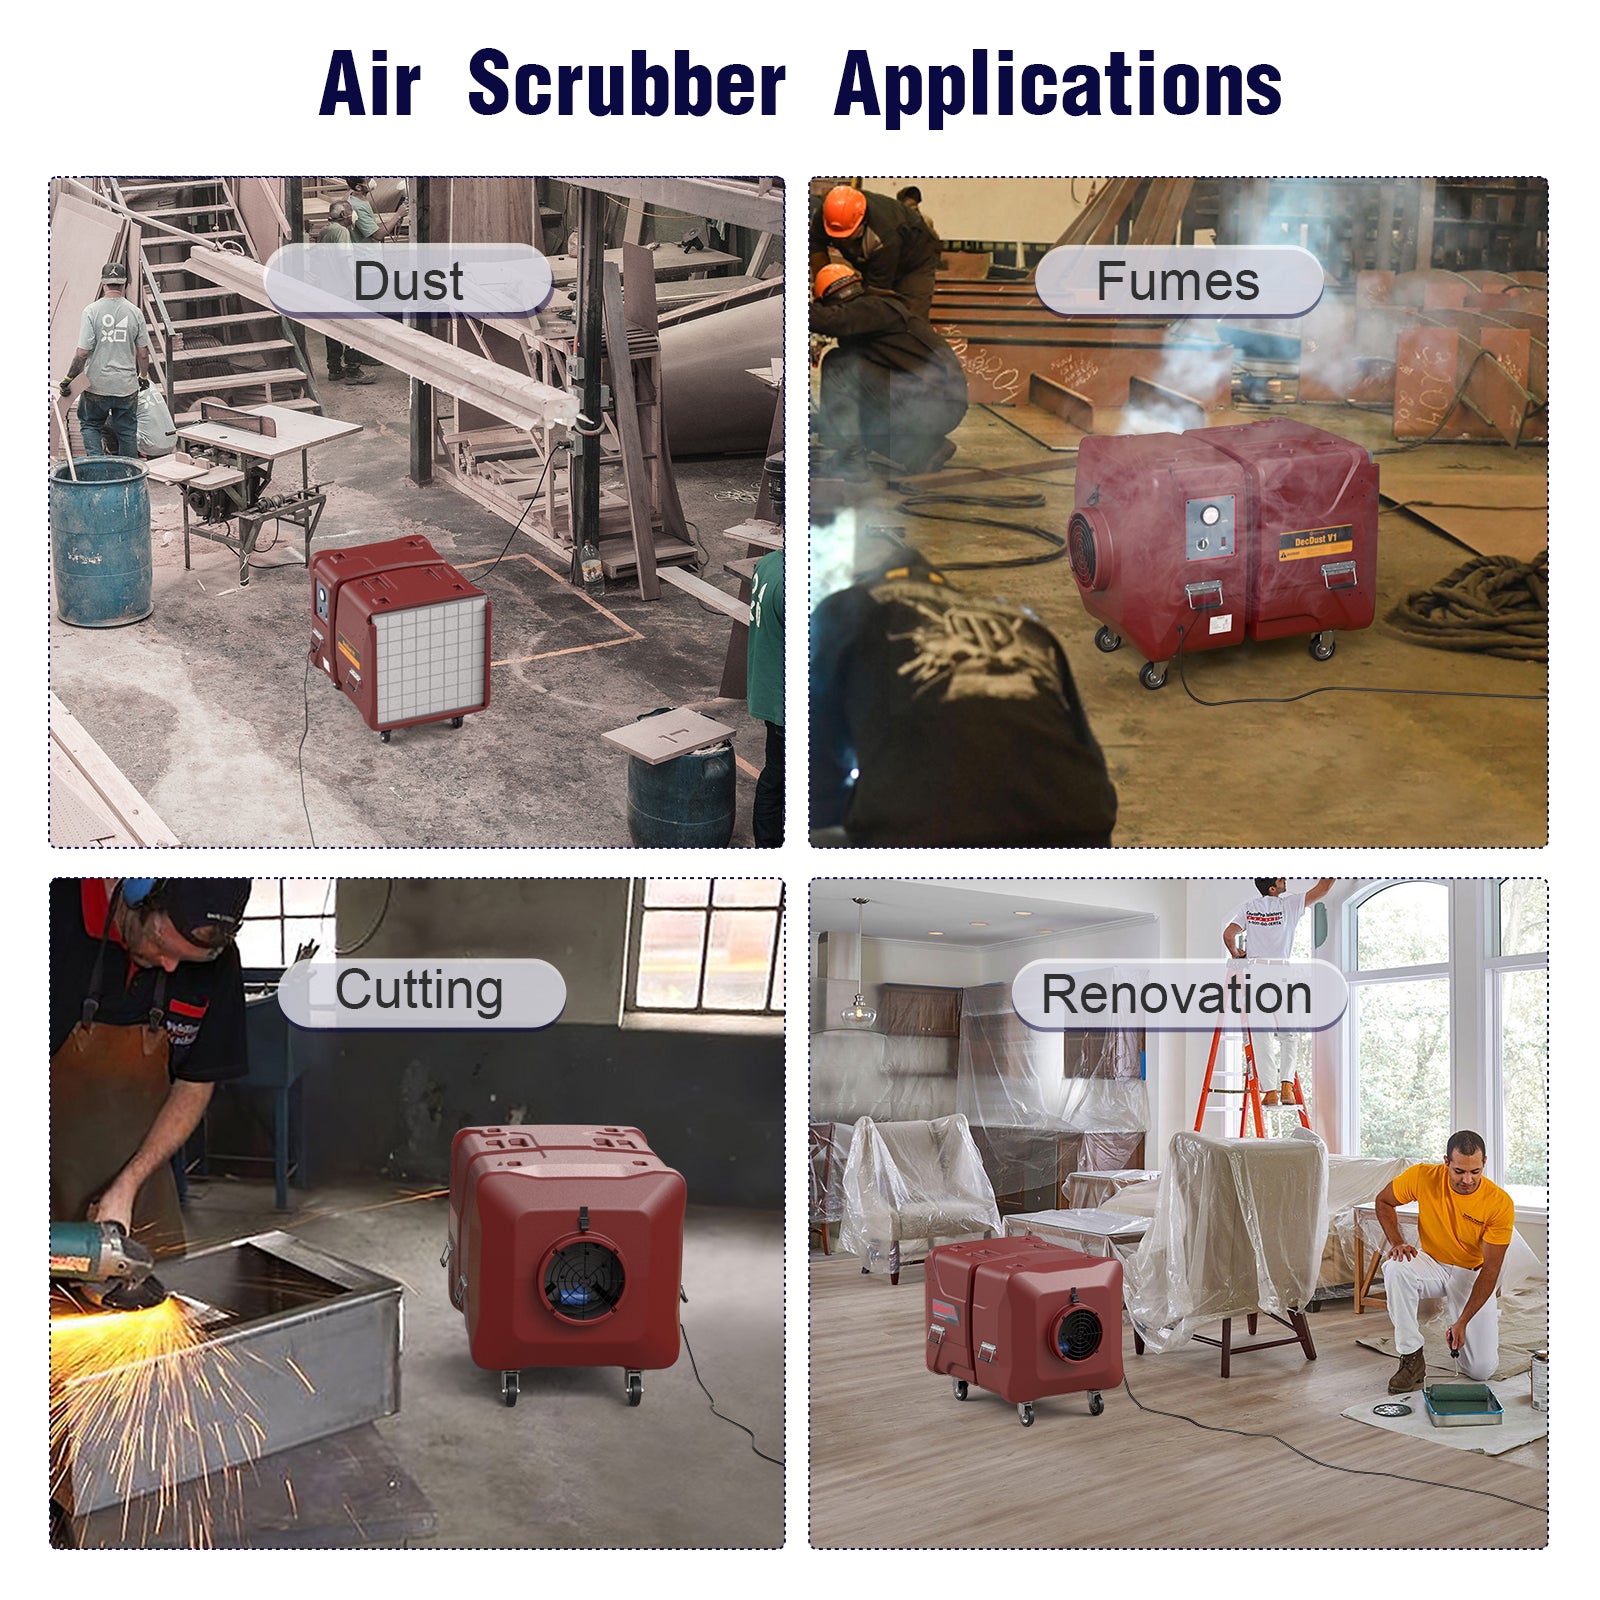 Abestorm 2000 CFM Commercial Air Scrubber |  DecDust V1